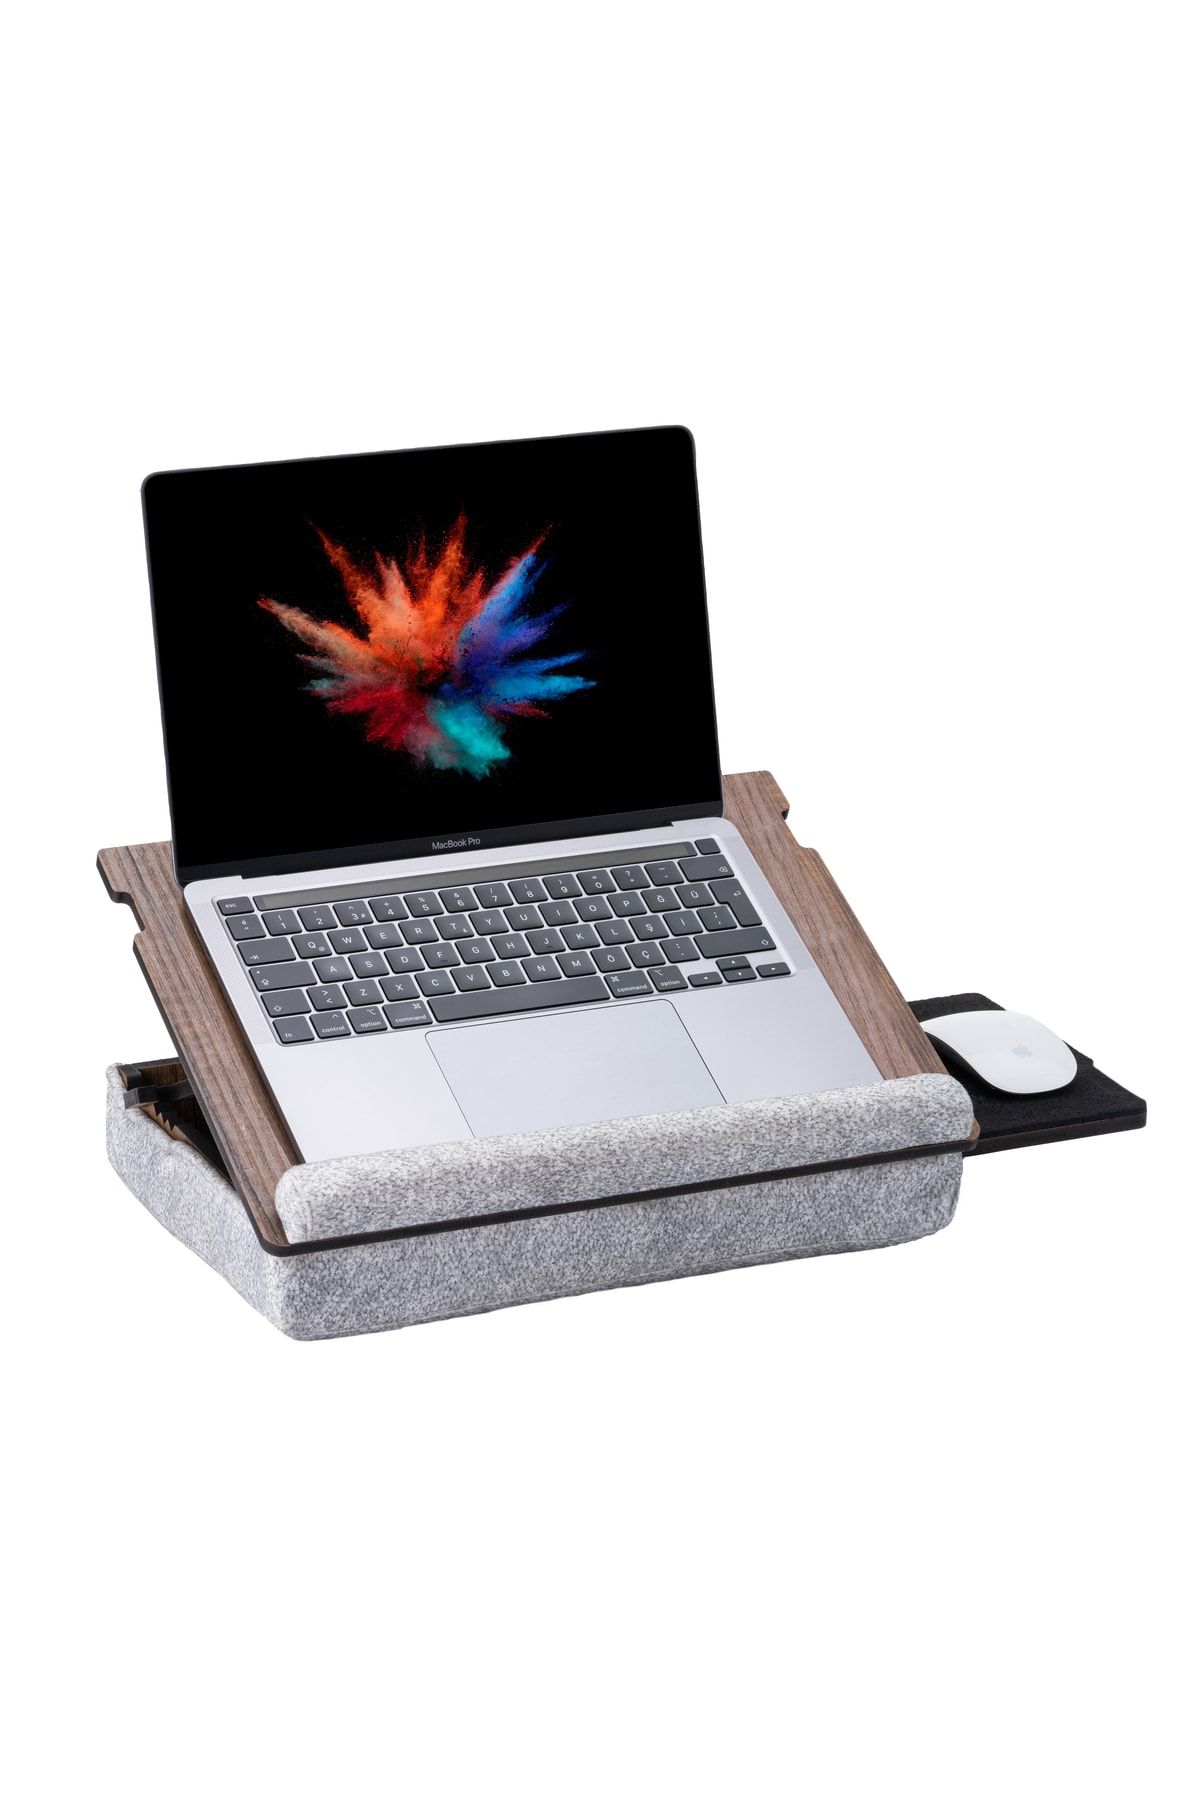 Vigo Wood - Eğim Ayarlanabilir Çekmeceli Mousepad Minderli Laptop Sehpası - Ceviz Ls051